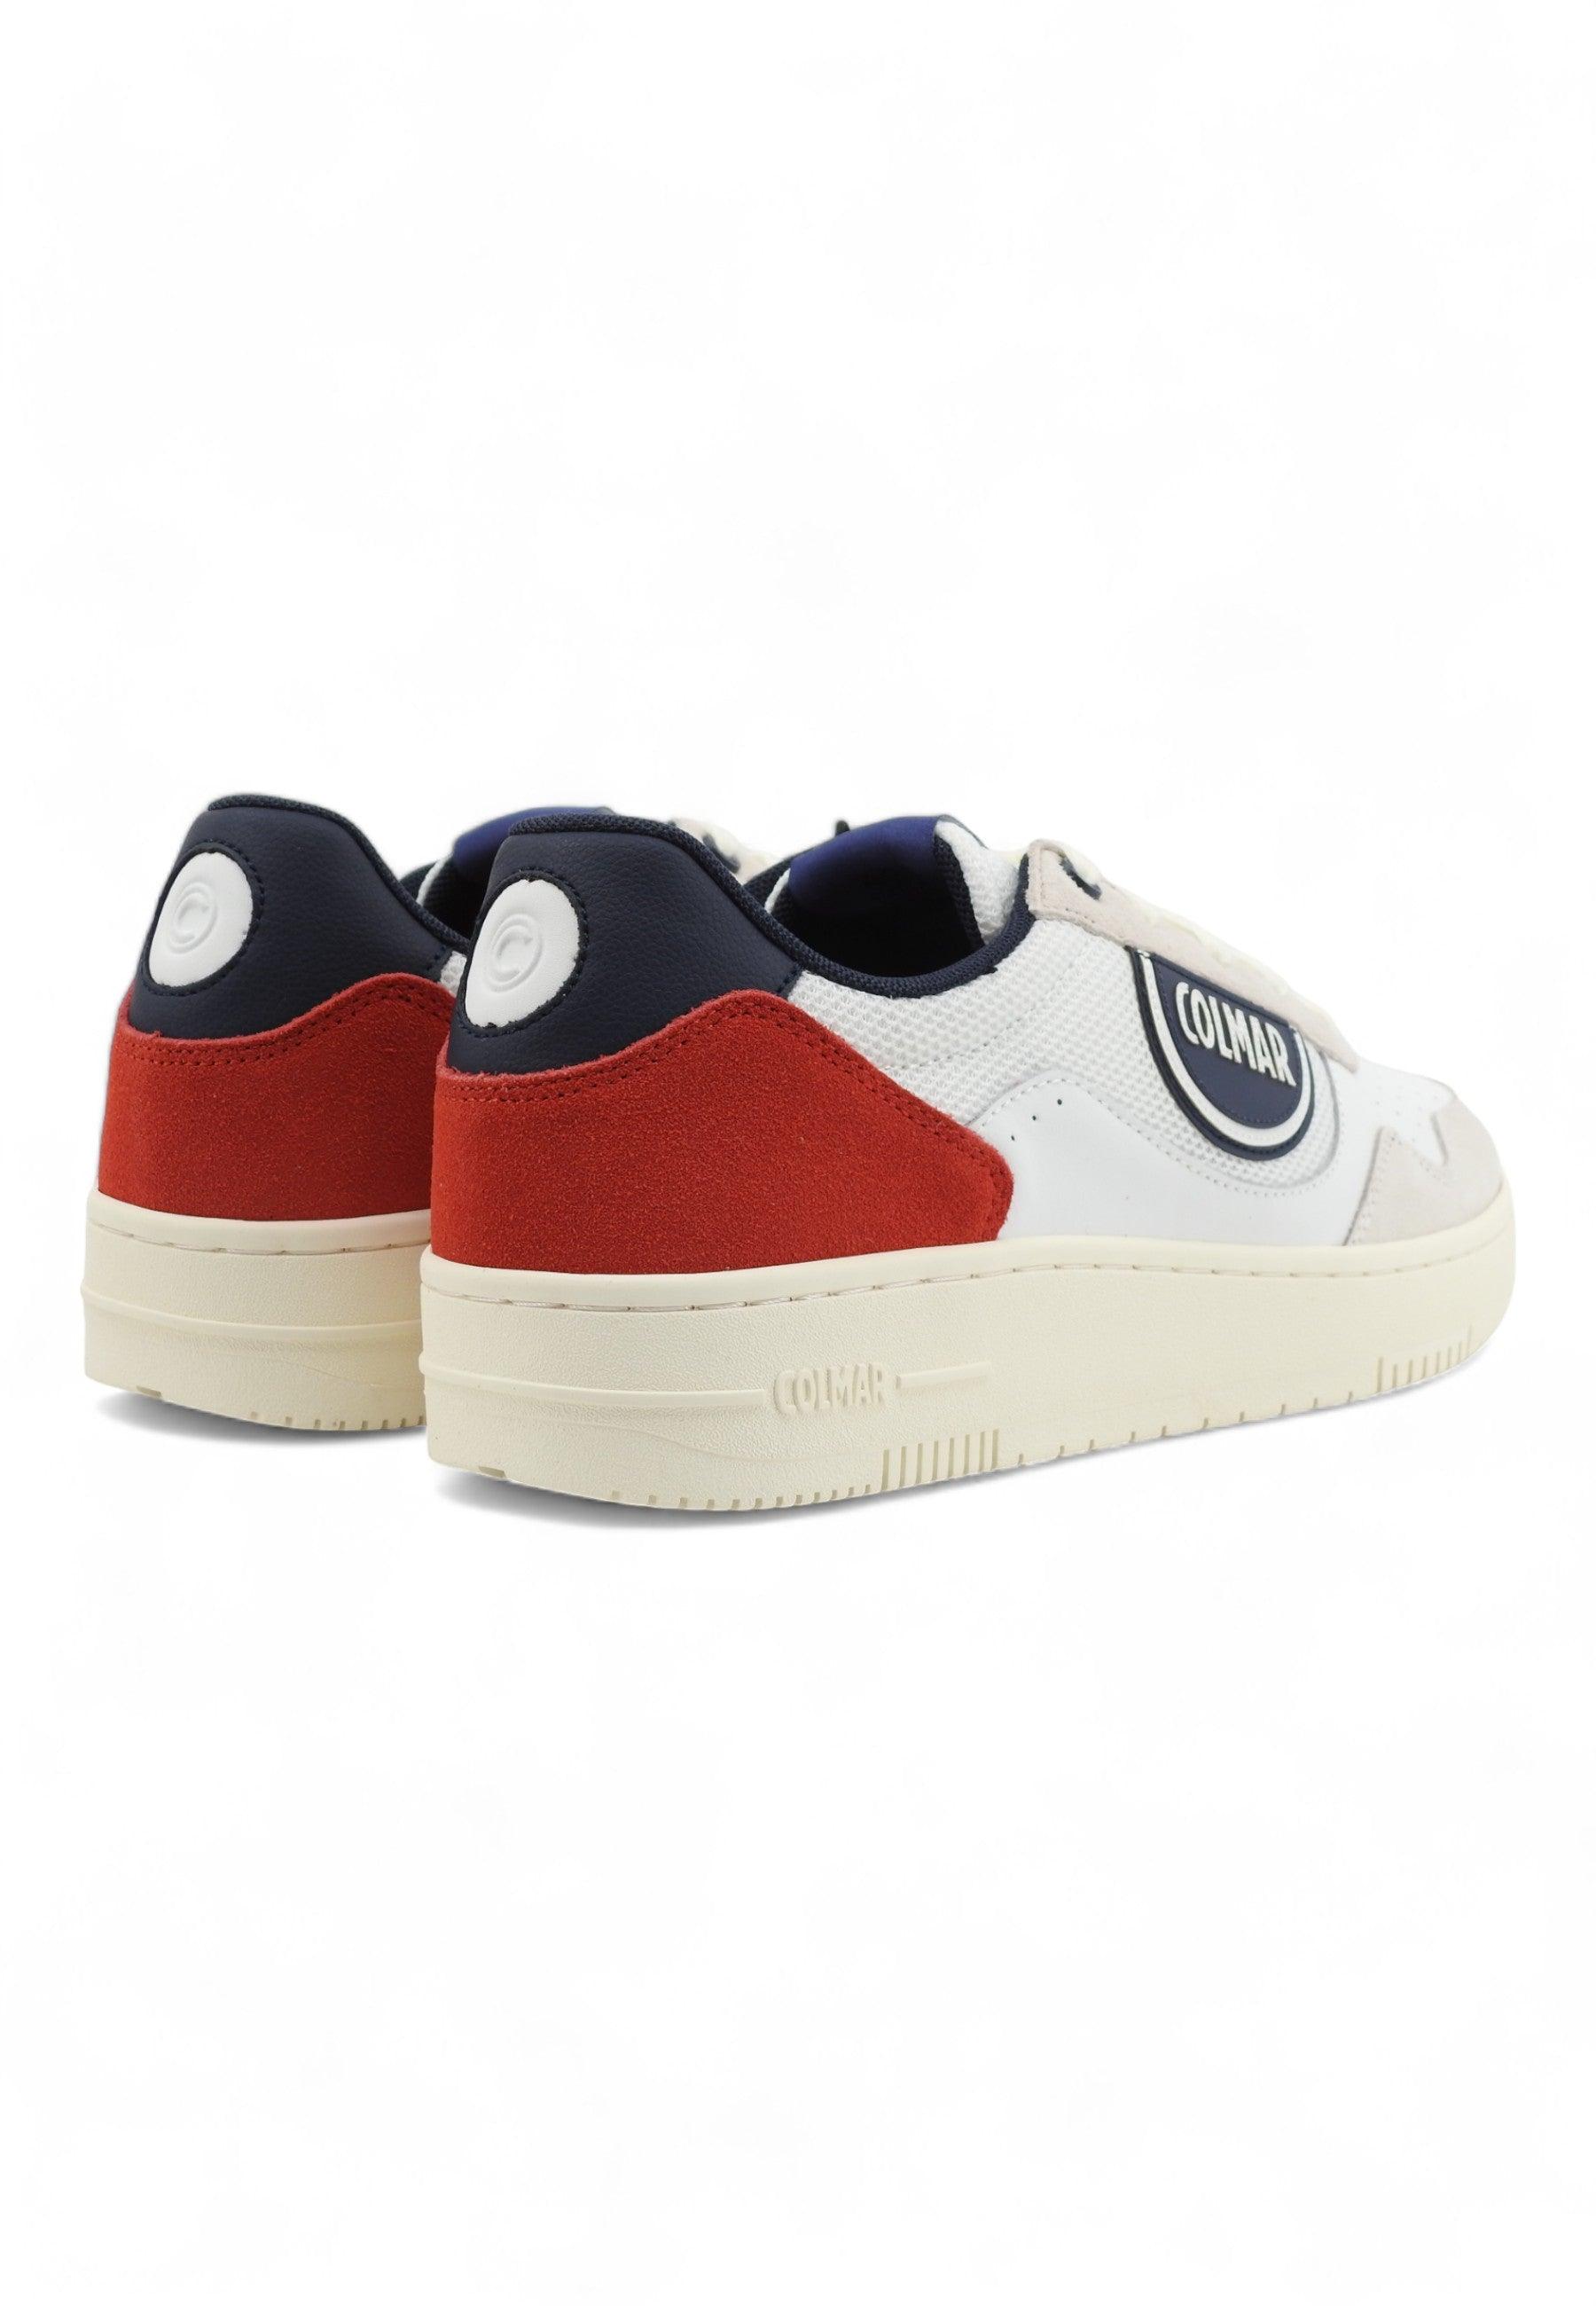 COLMAR Sneaker Uomo White Navy Red AUSTIN MASTER - Sandrini Calzature e Abbigliamento